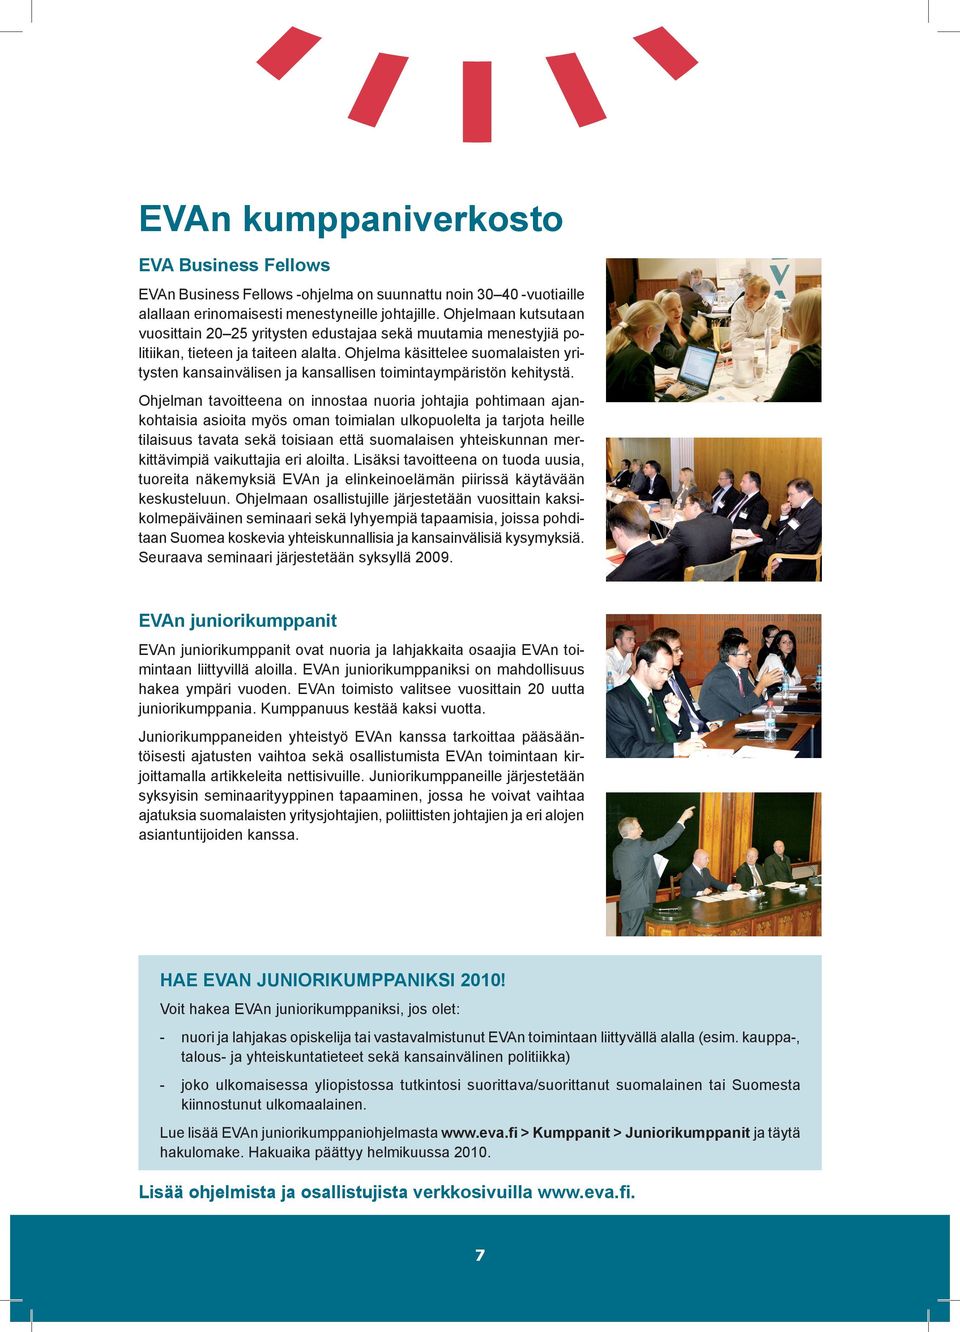 Ohjelma käsittelee suomalaisten yritysten kansainvälisen ja kansallisen toimintaympäristön kehitystä.